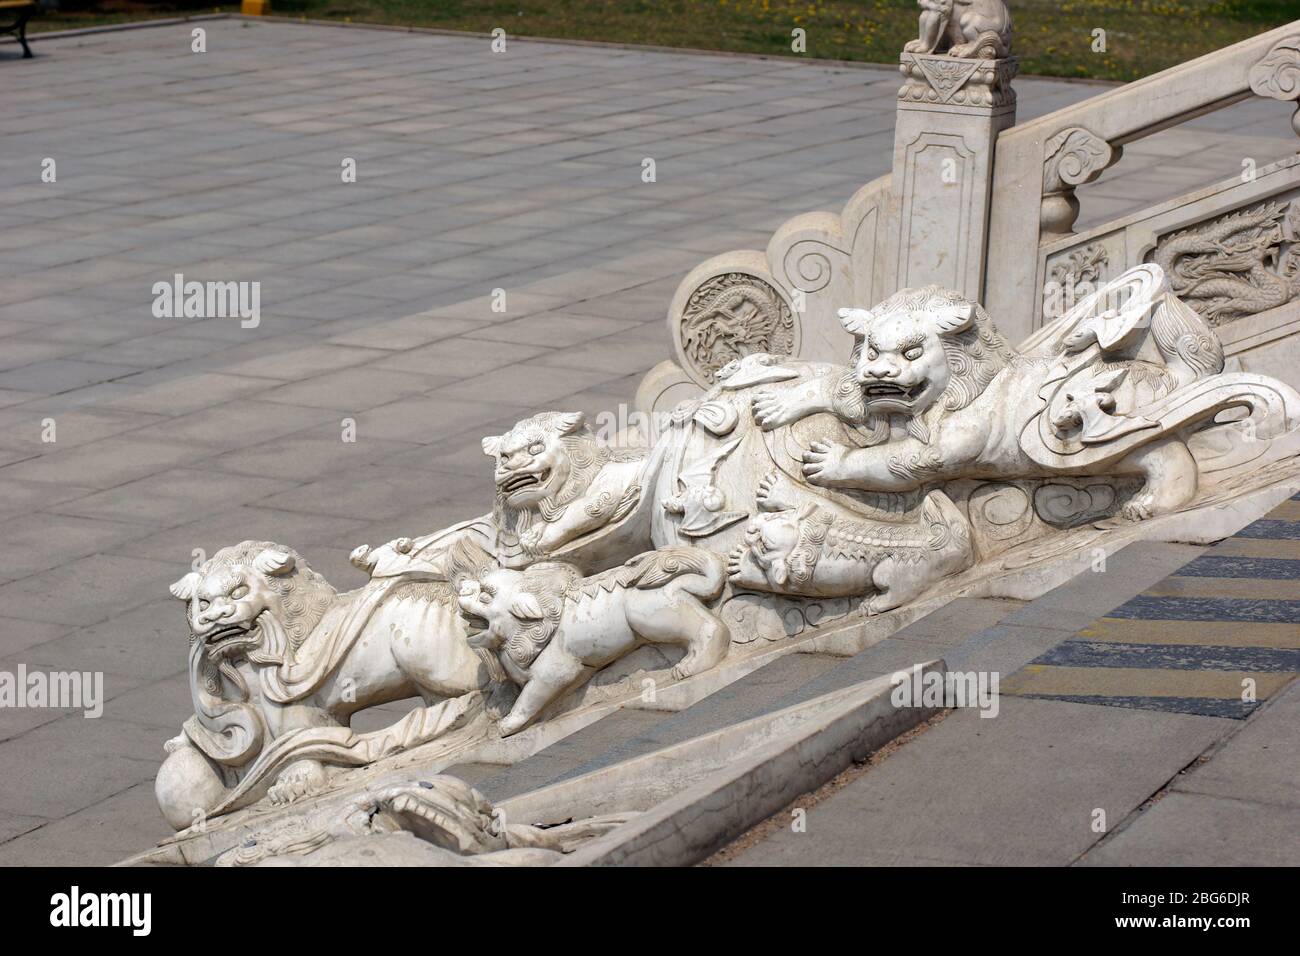 Les lions et les chauves-souris chinois sont sculptés en pierre. Jade Buddha Park, Anshan, province de Liaoning, Chine, Asie. Banque D'Images